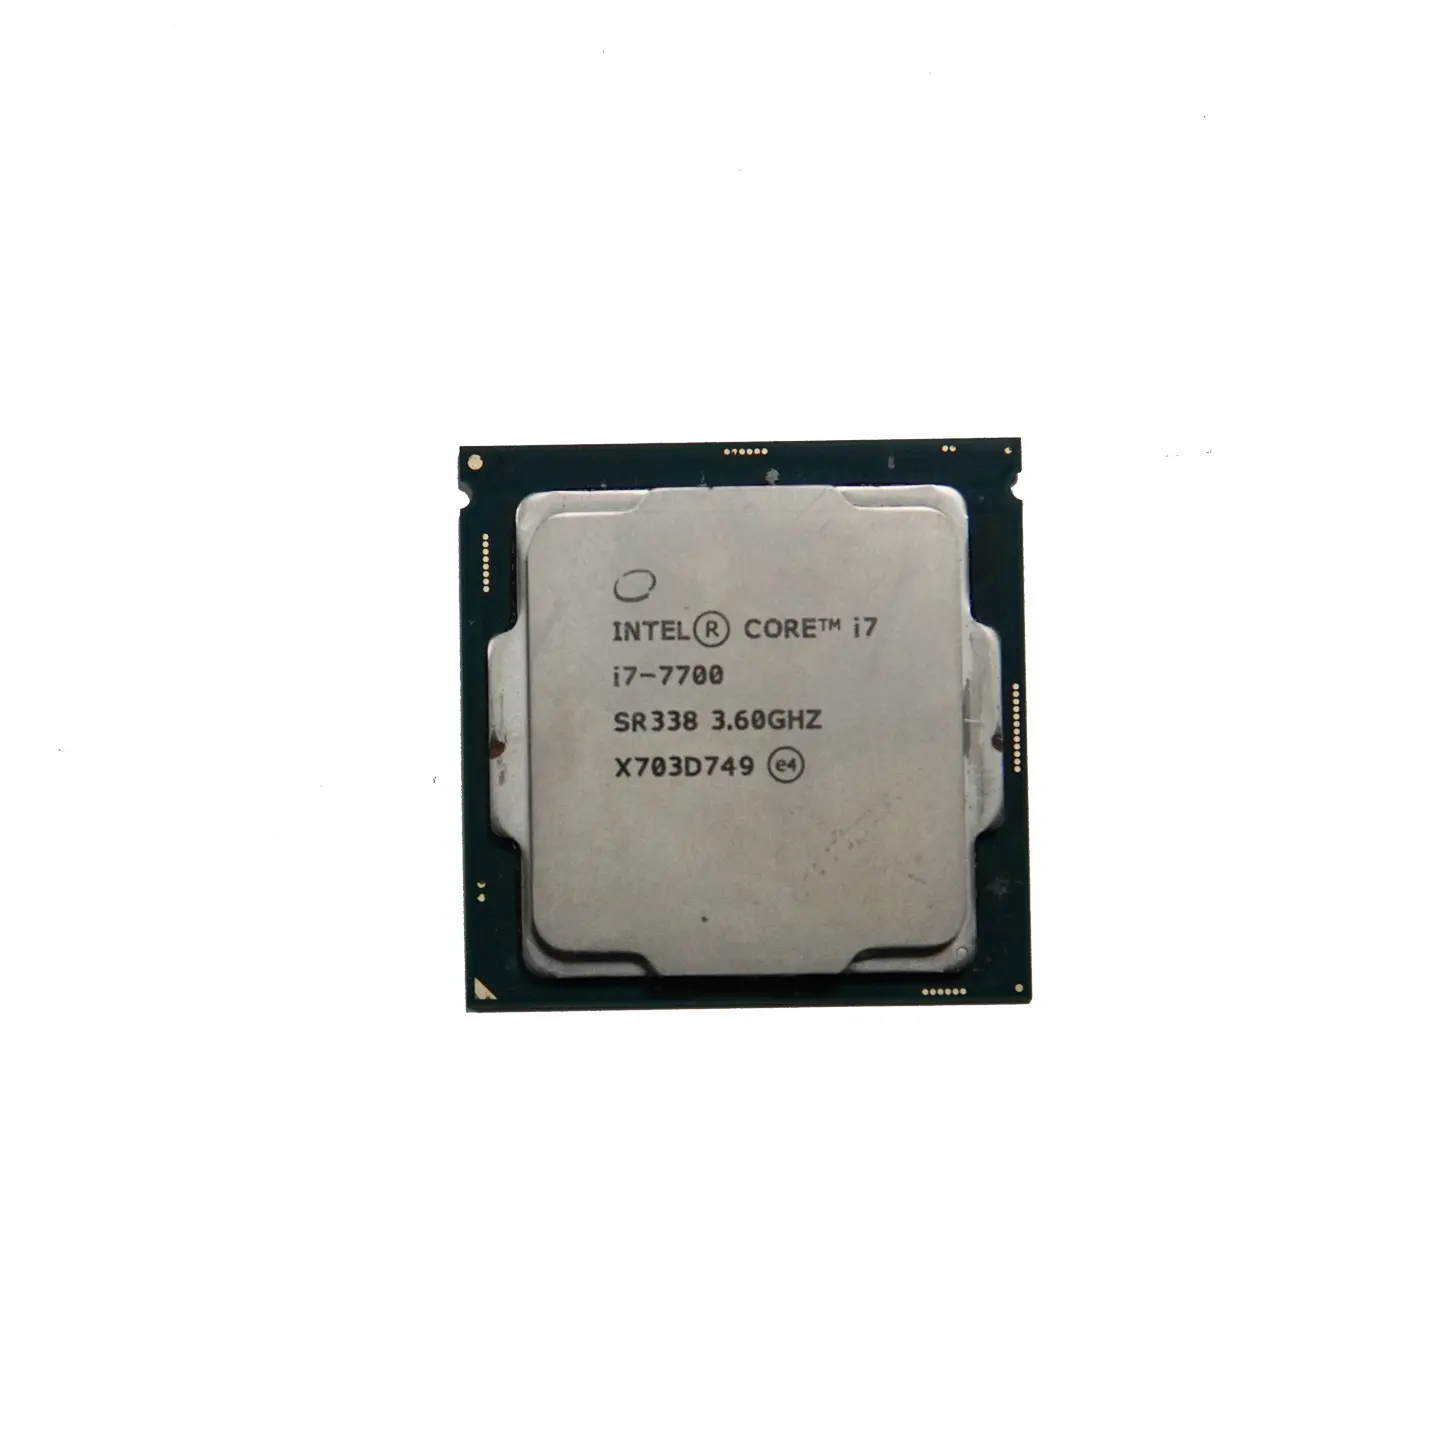 इंटेल कोर i7-7700 ट्रैक्टर-कोर उपयोग किए गए सीपीयू डेस्कटॉप 3.6GHz एलजीए 1151 65W 64GB प्रोसेसर